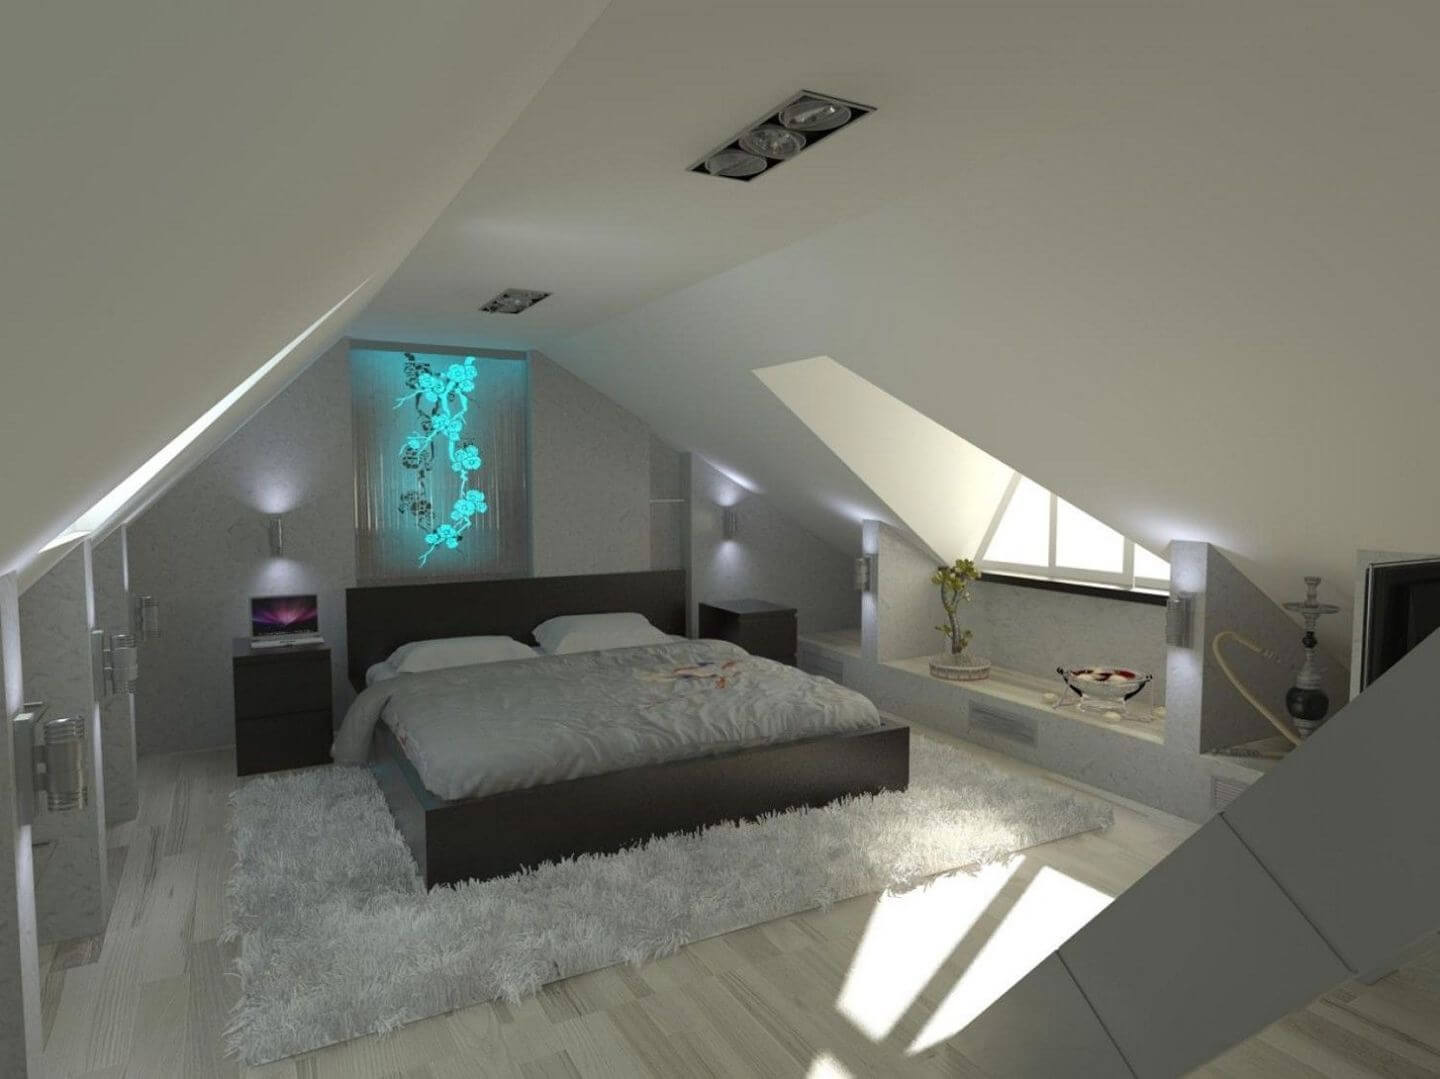 Elegant bedroom in the attic